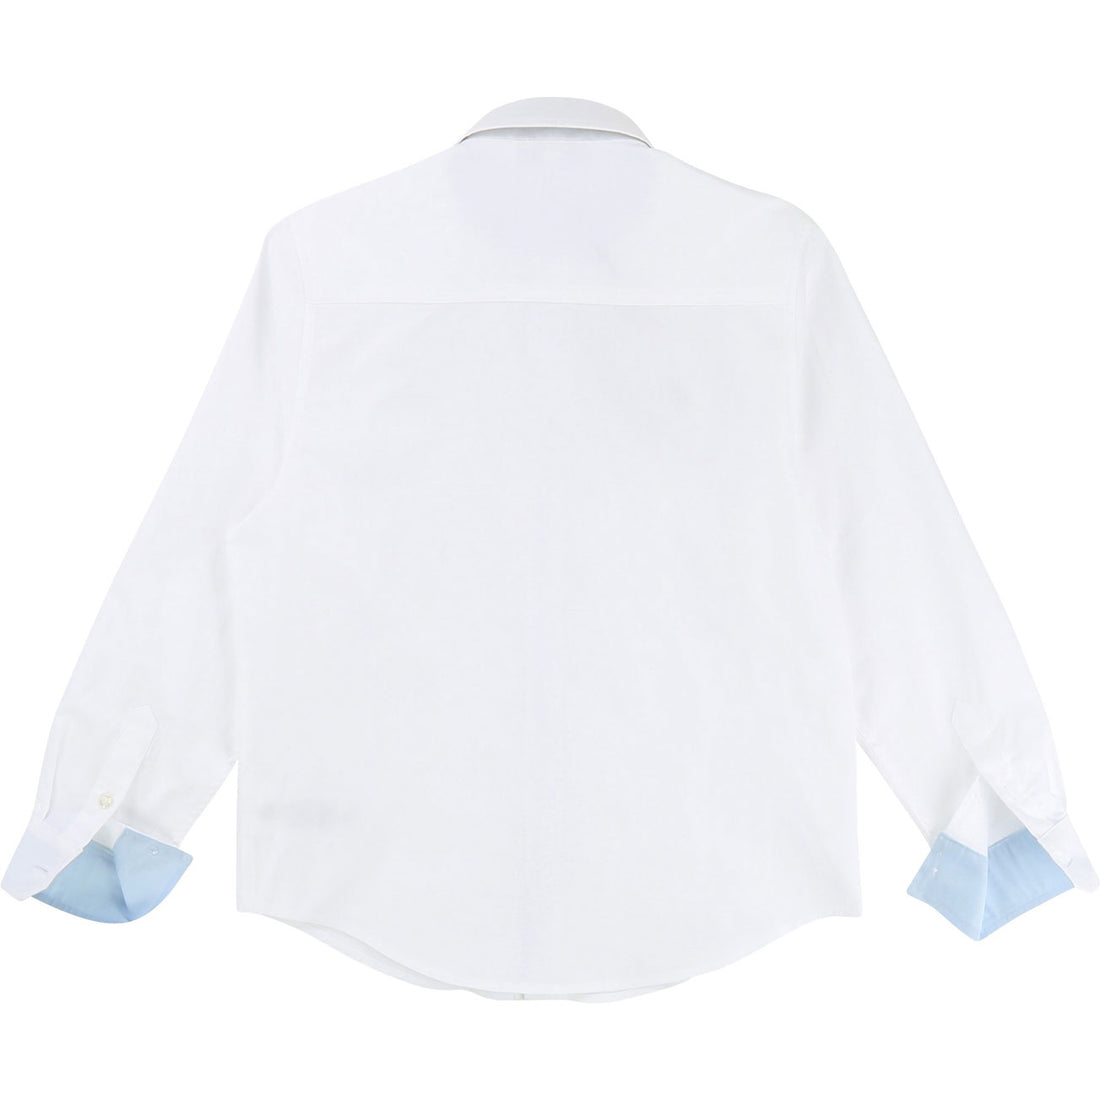 BOSS Hugo Boss White Classic Long Sleeve Shirt